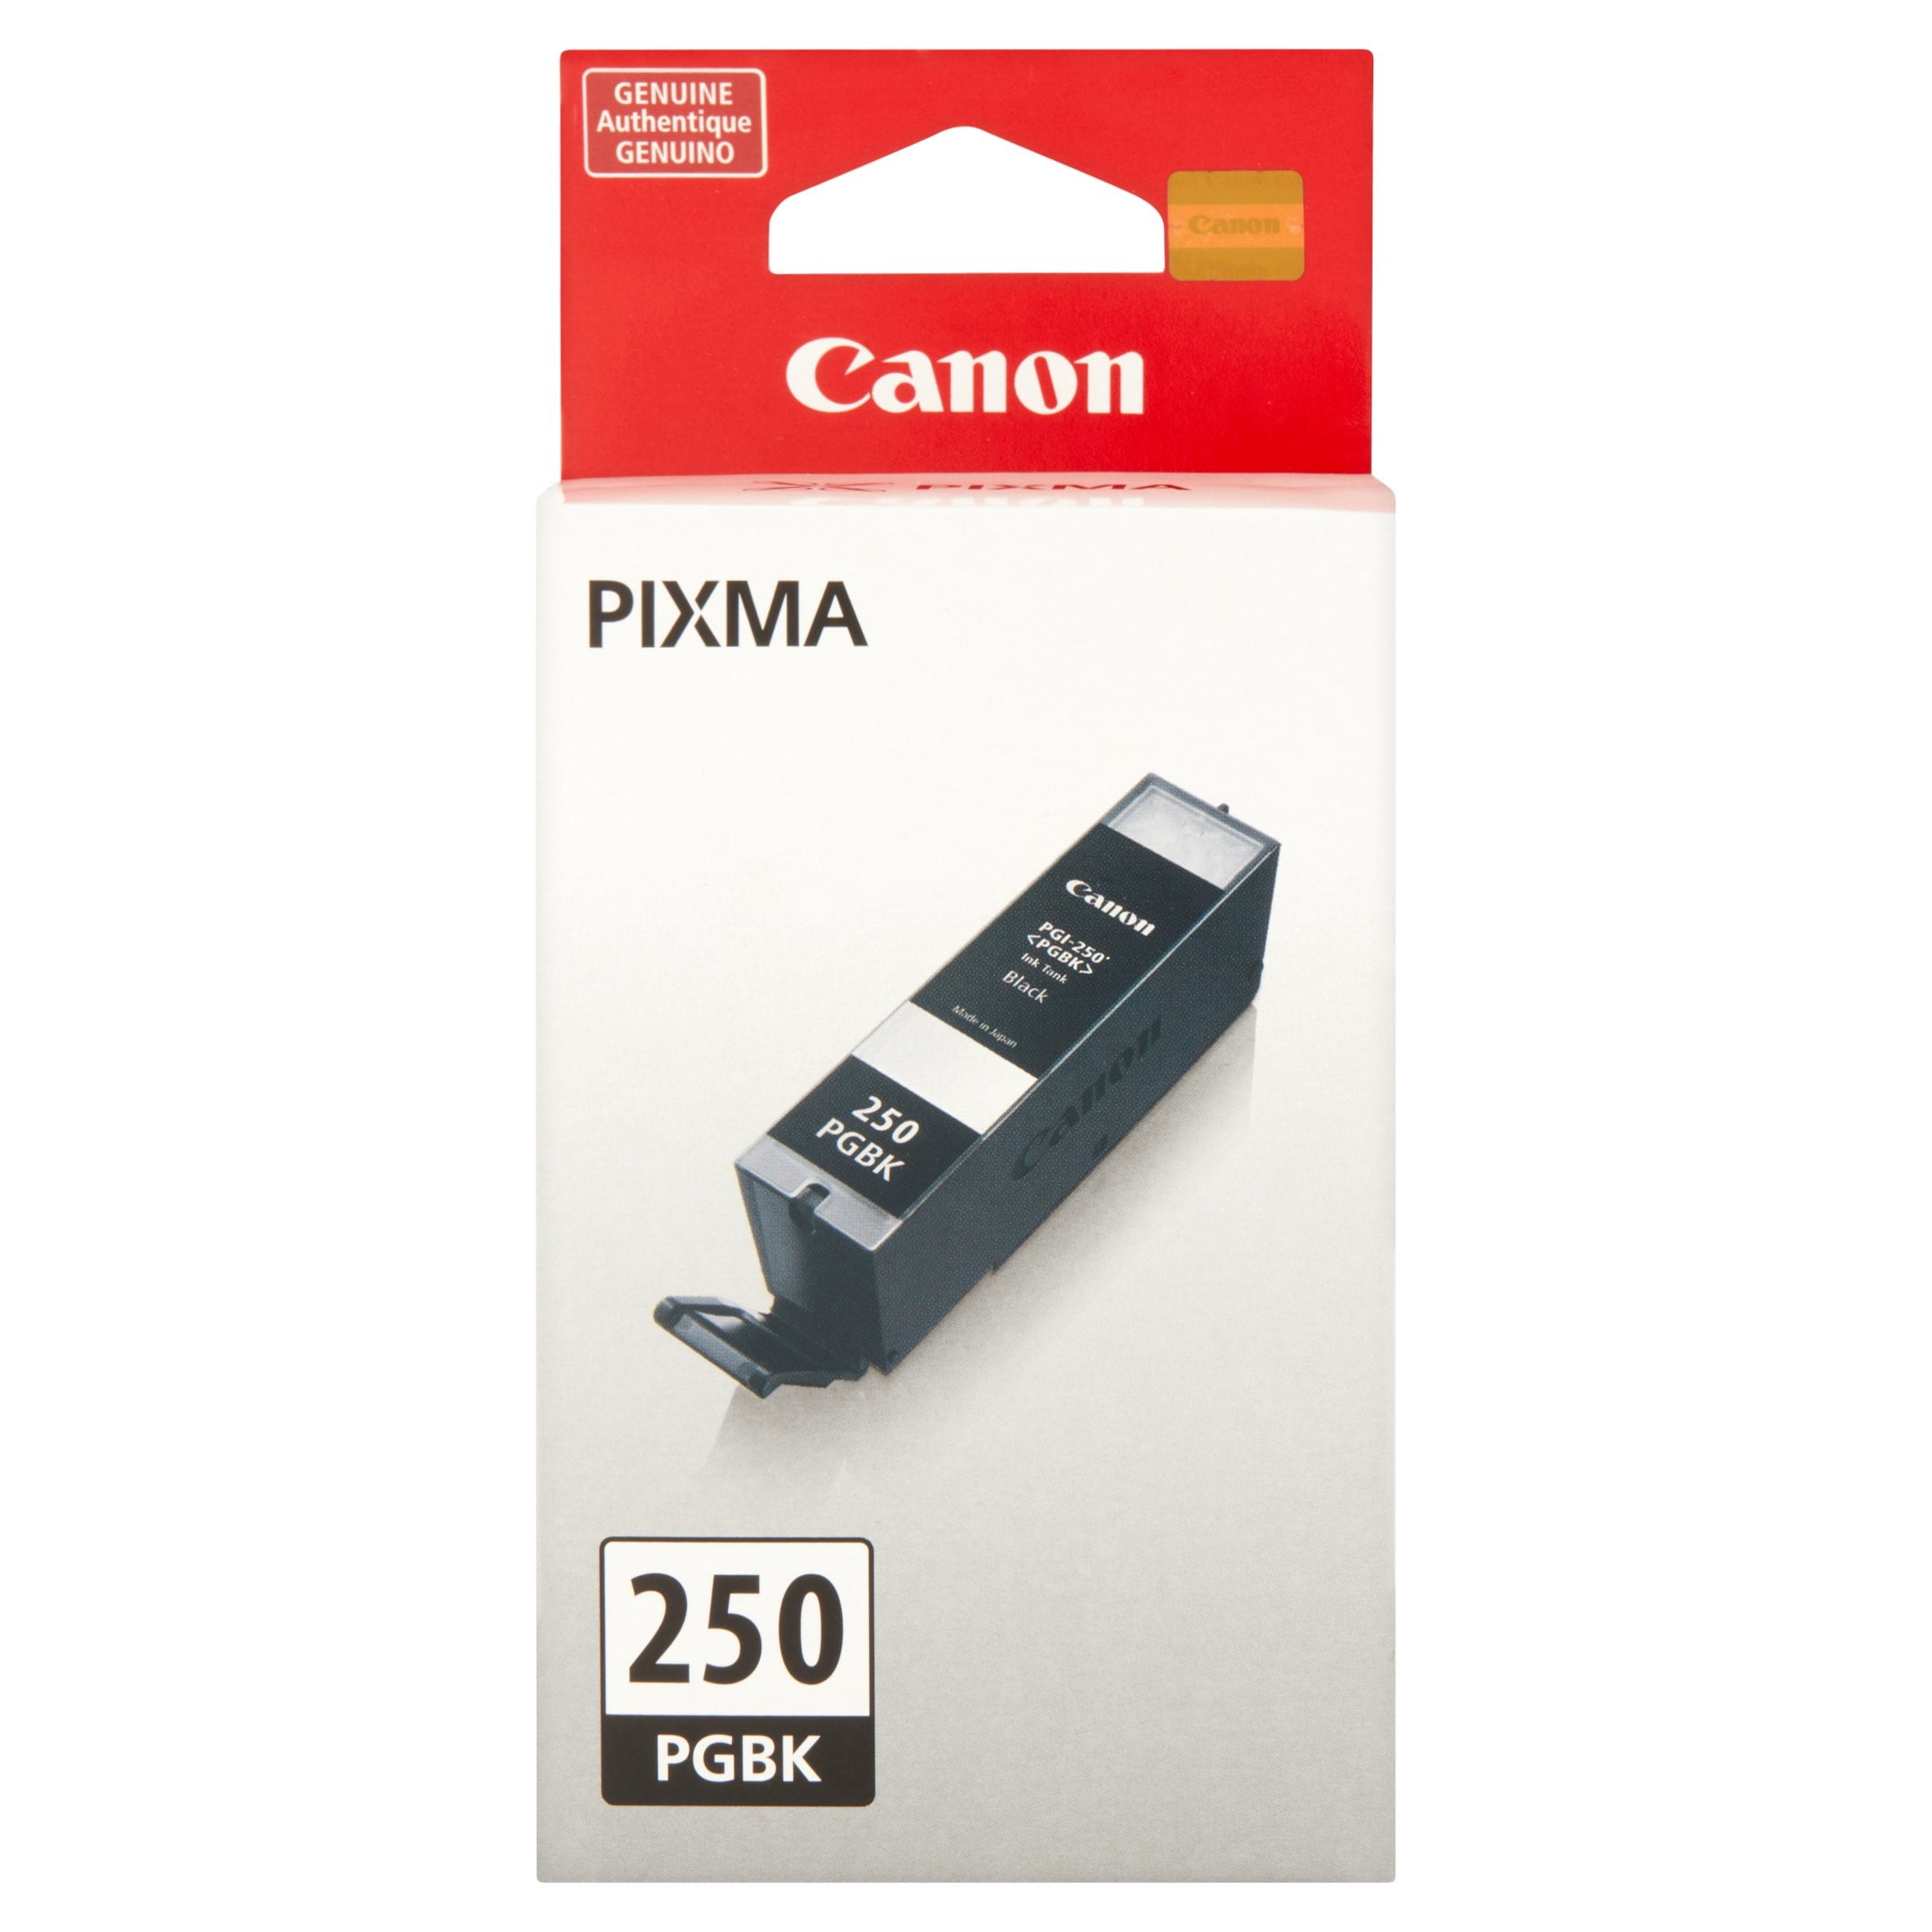 Canon pixma 250